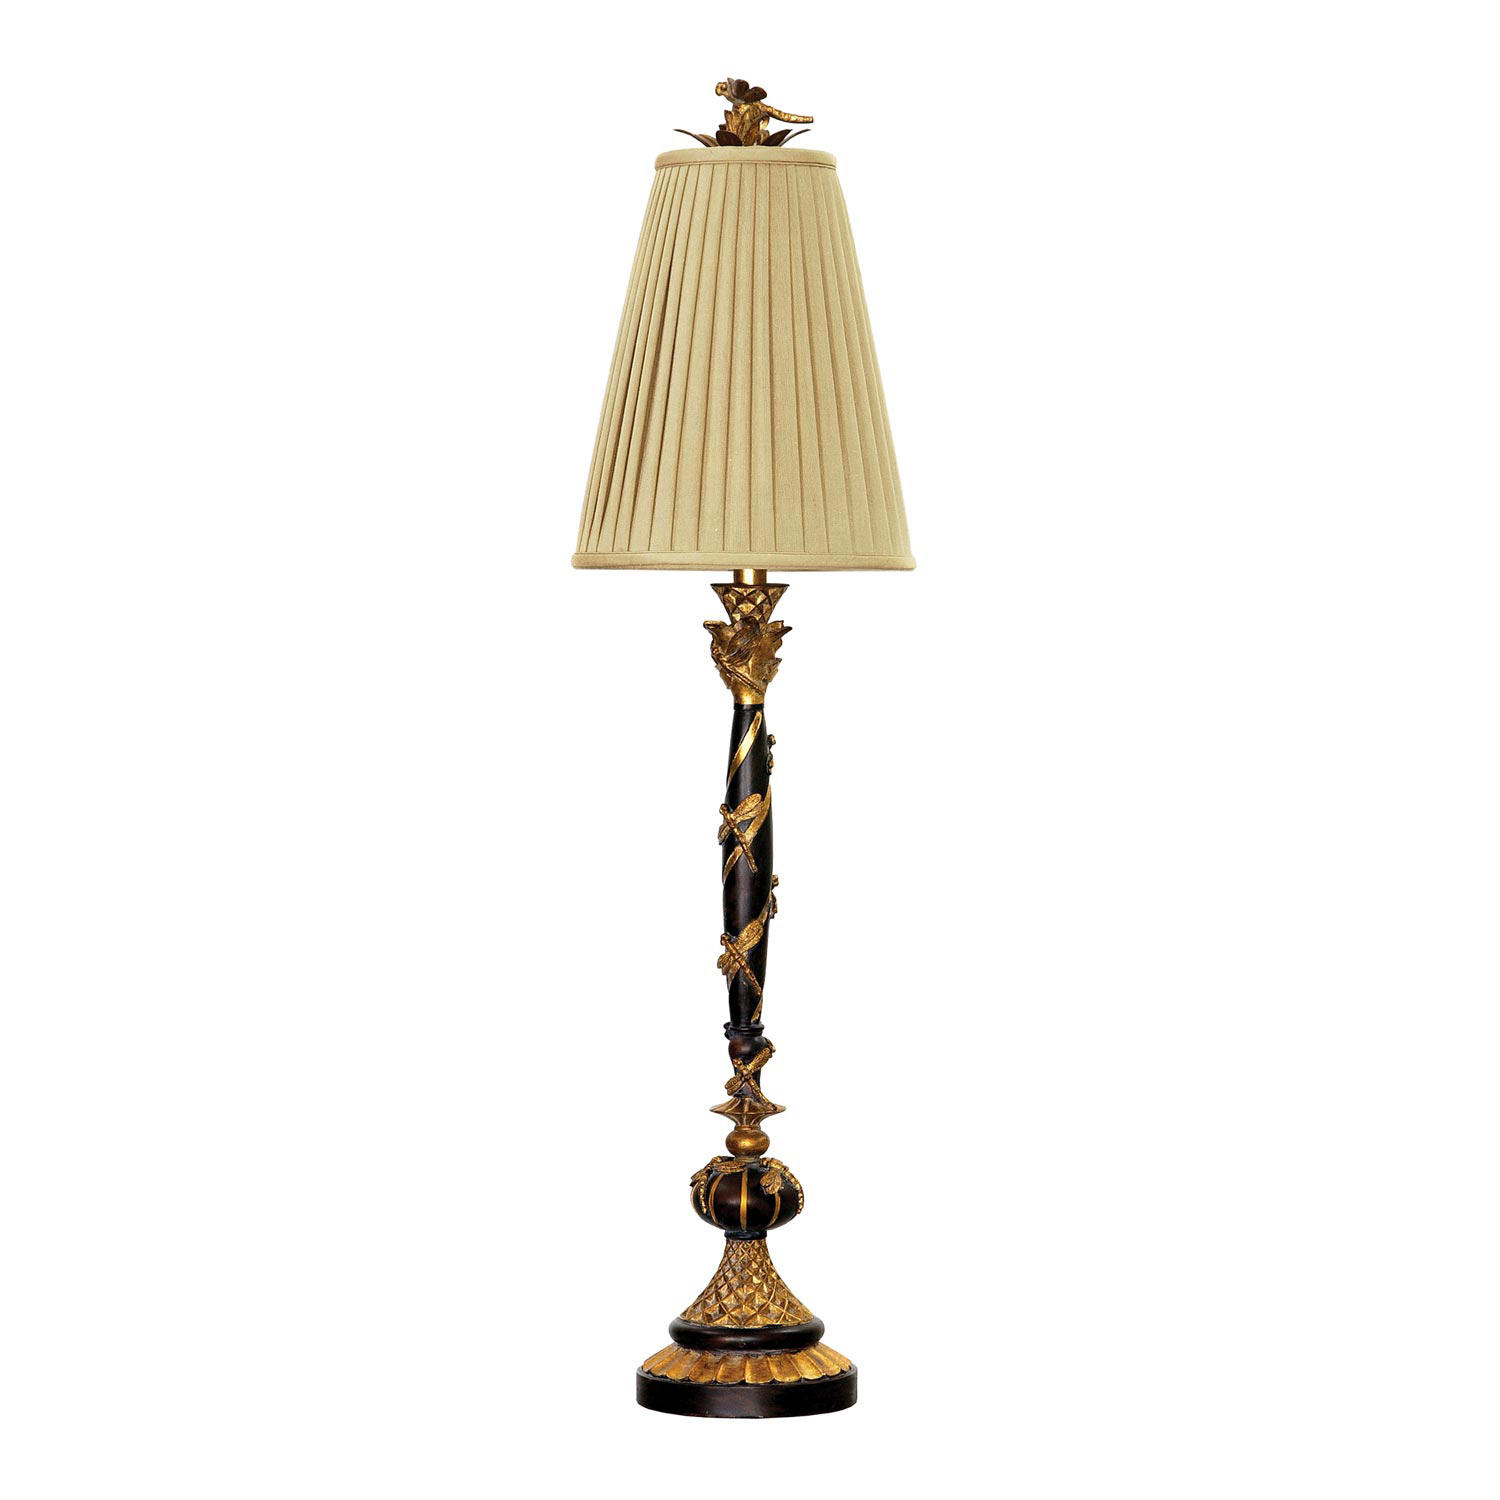 Elk Lighting 91-194 Dragonfly Column Table Lamp - Gold Leaf / Black